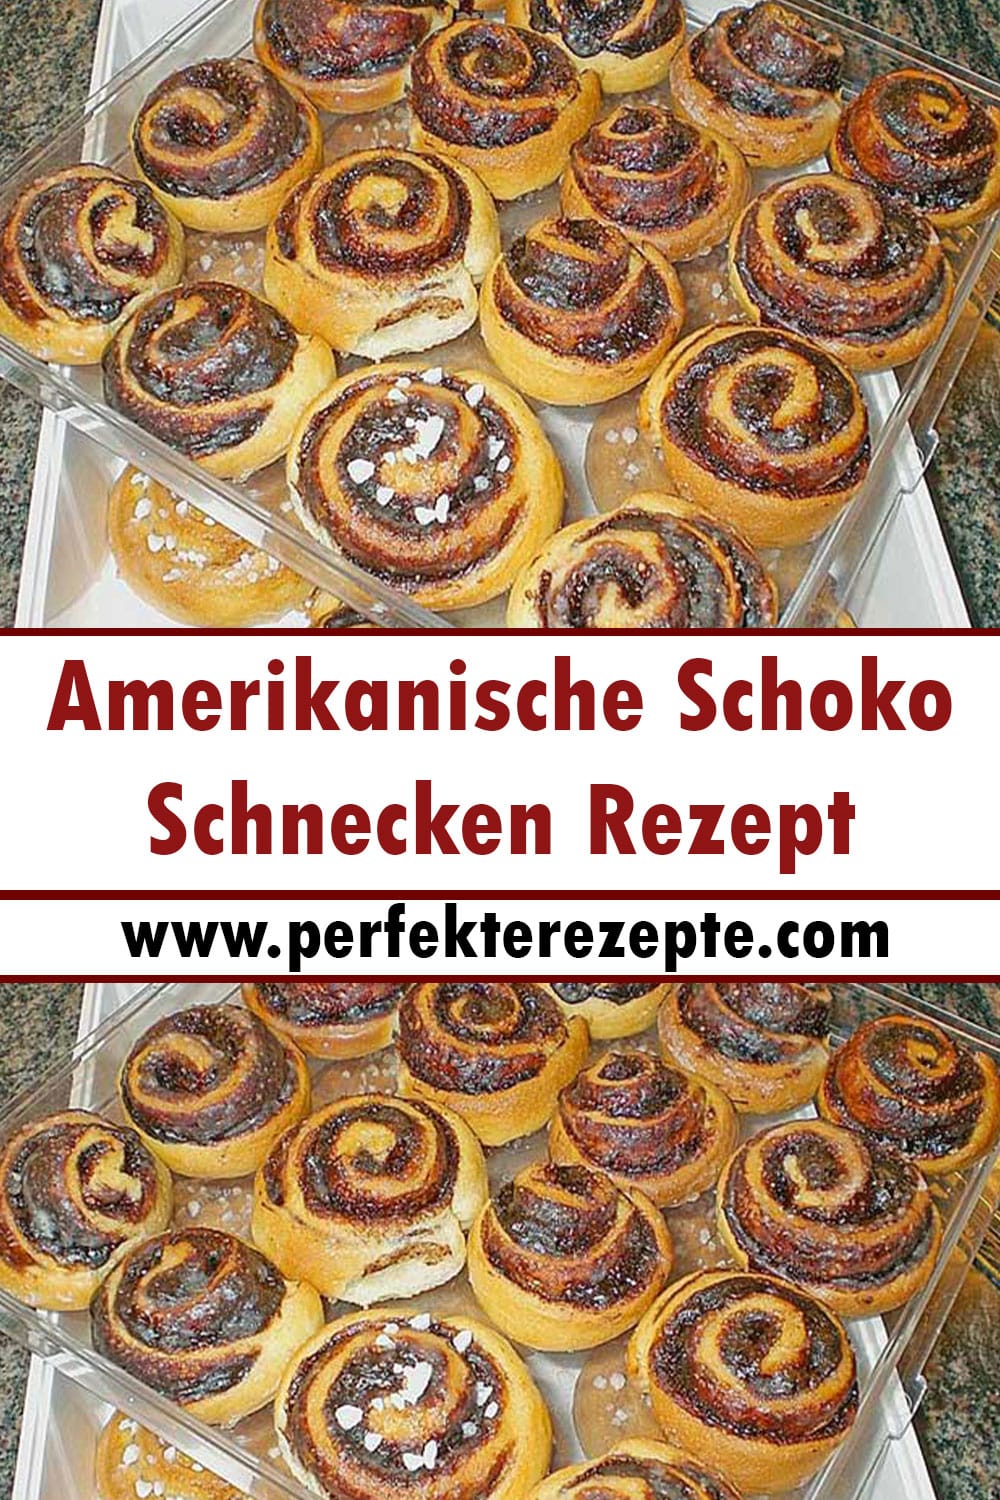 Amerikanische Schoko-Schnecken Rezept